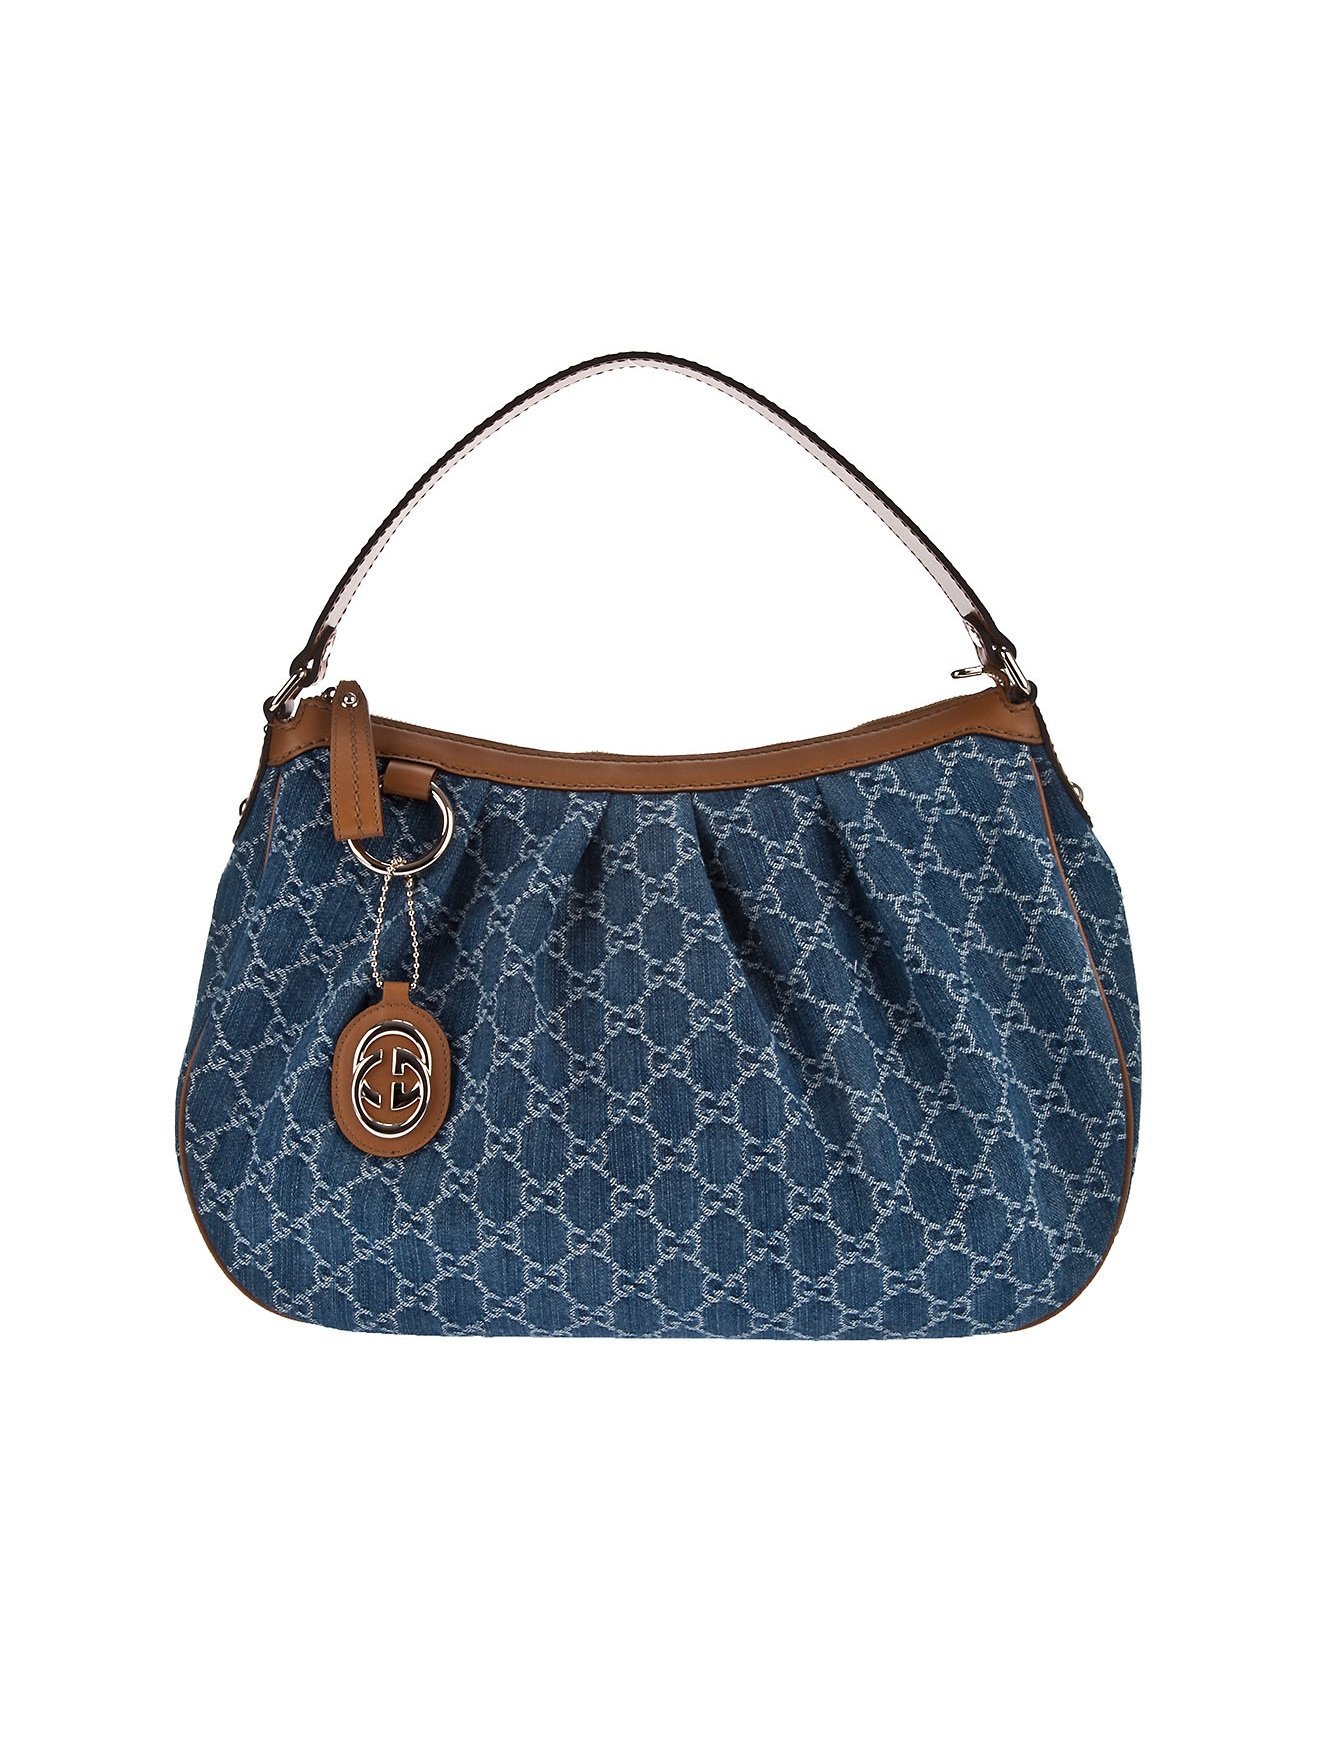 Gucci Sukey Hobo Bag in Blue (denim) | Lyst